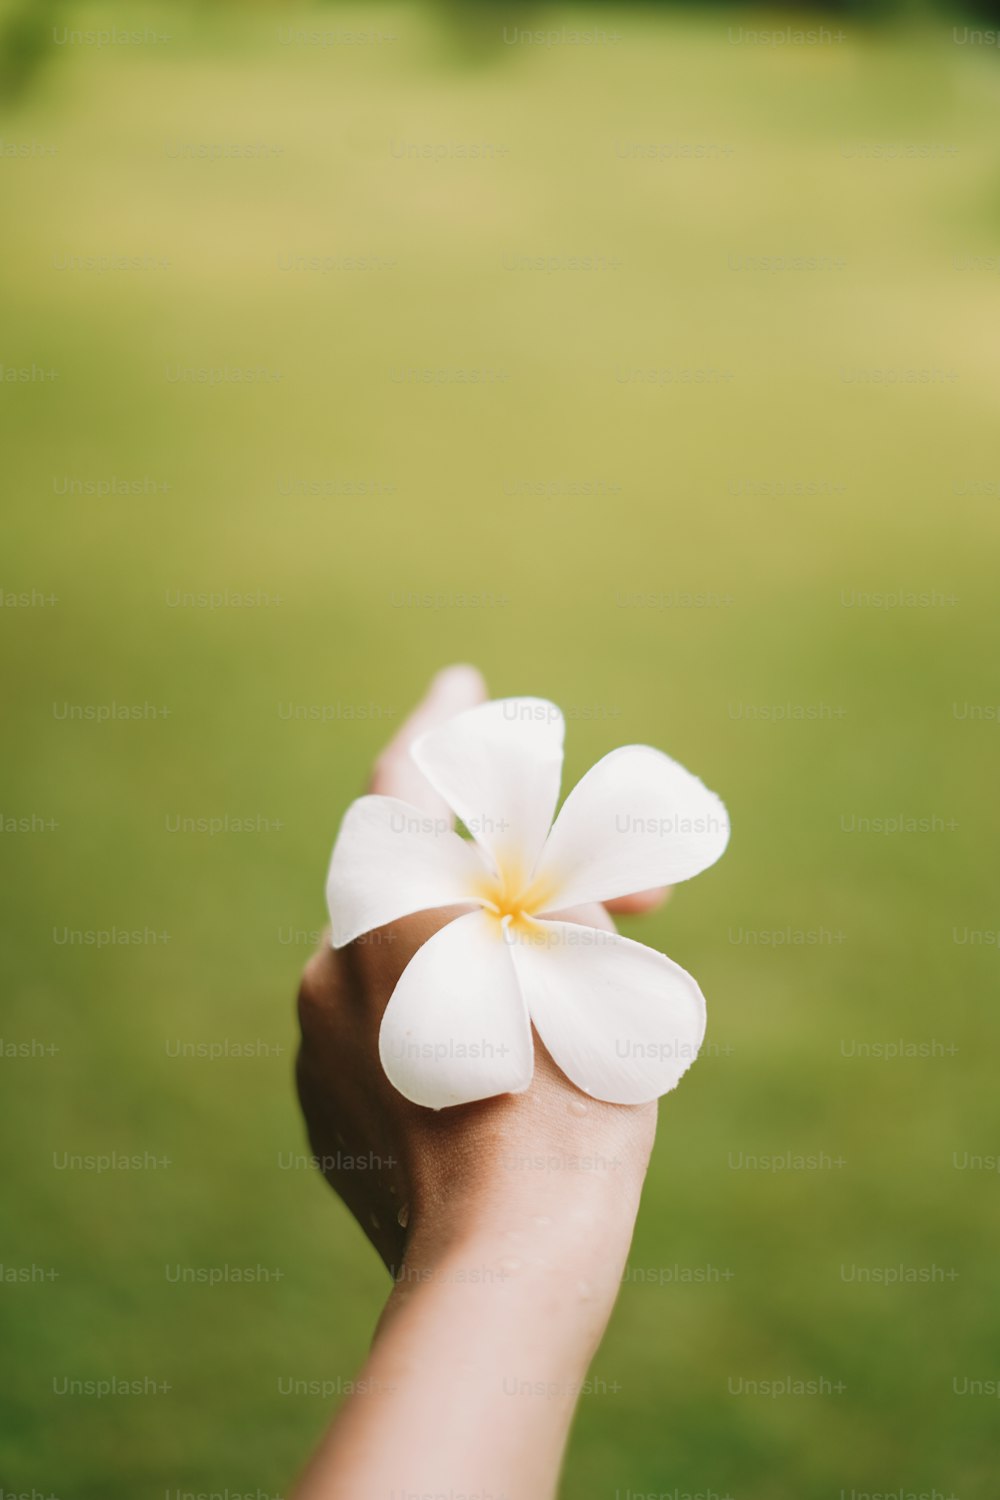 손에 흰 꽃을 들고 있는 사람